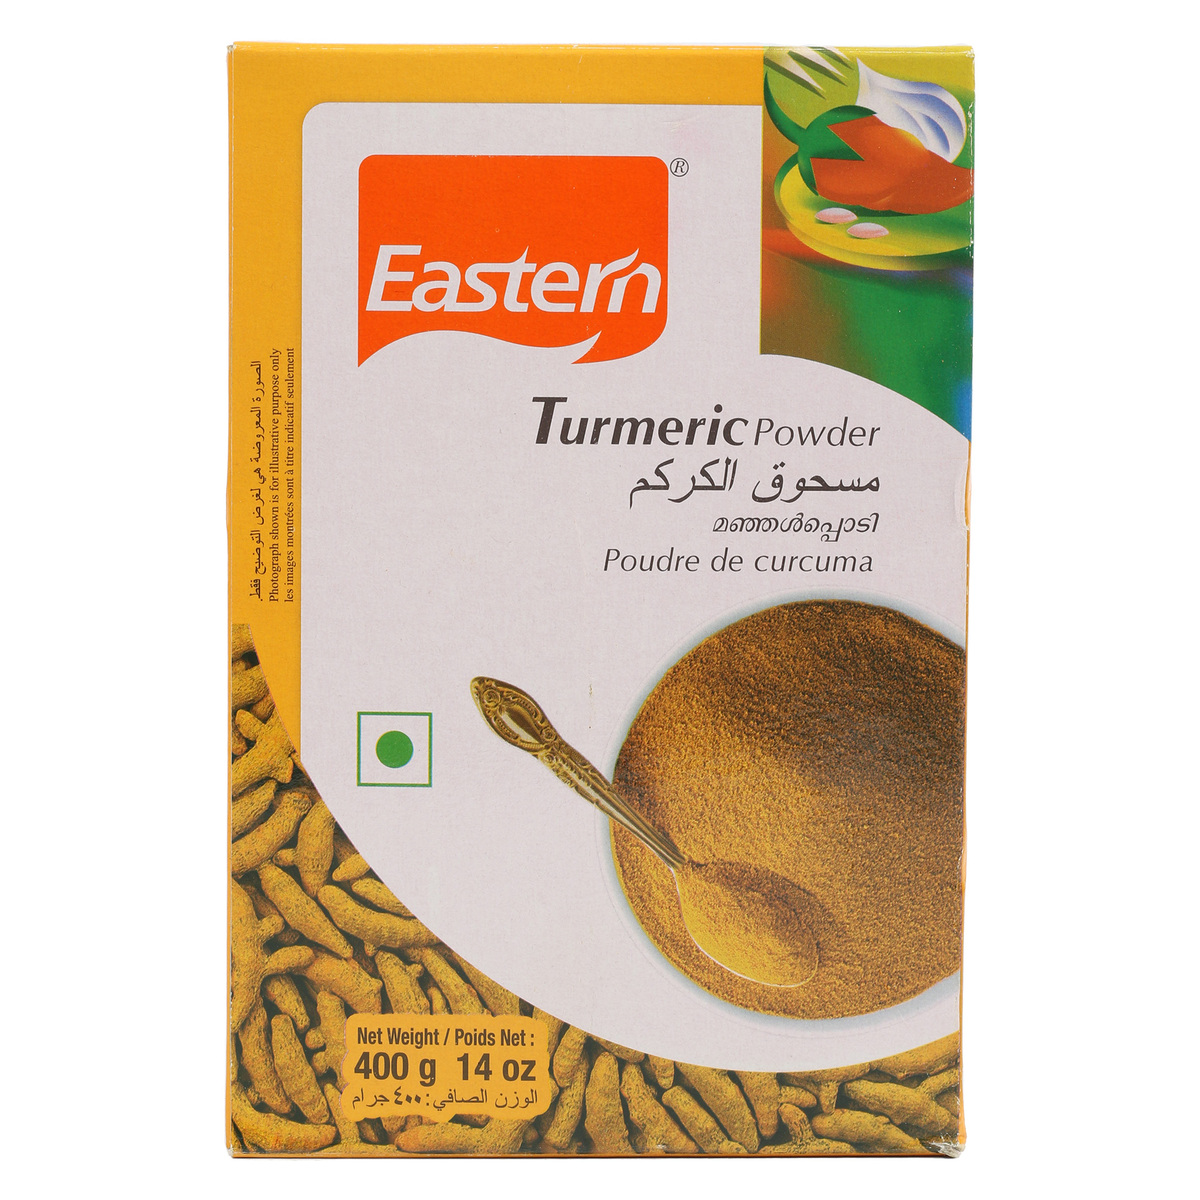 Eastern Turmeric Powder 400g